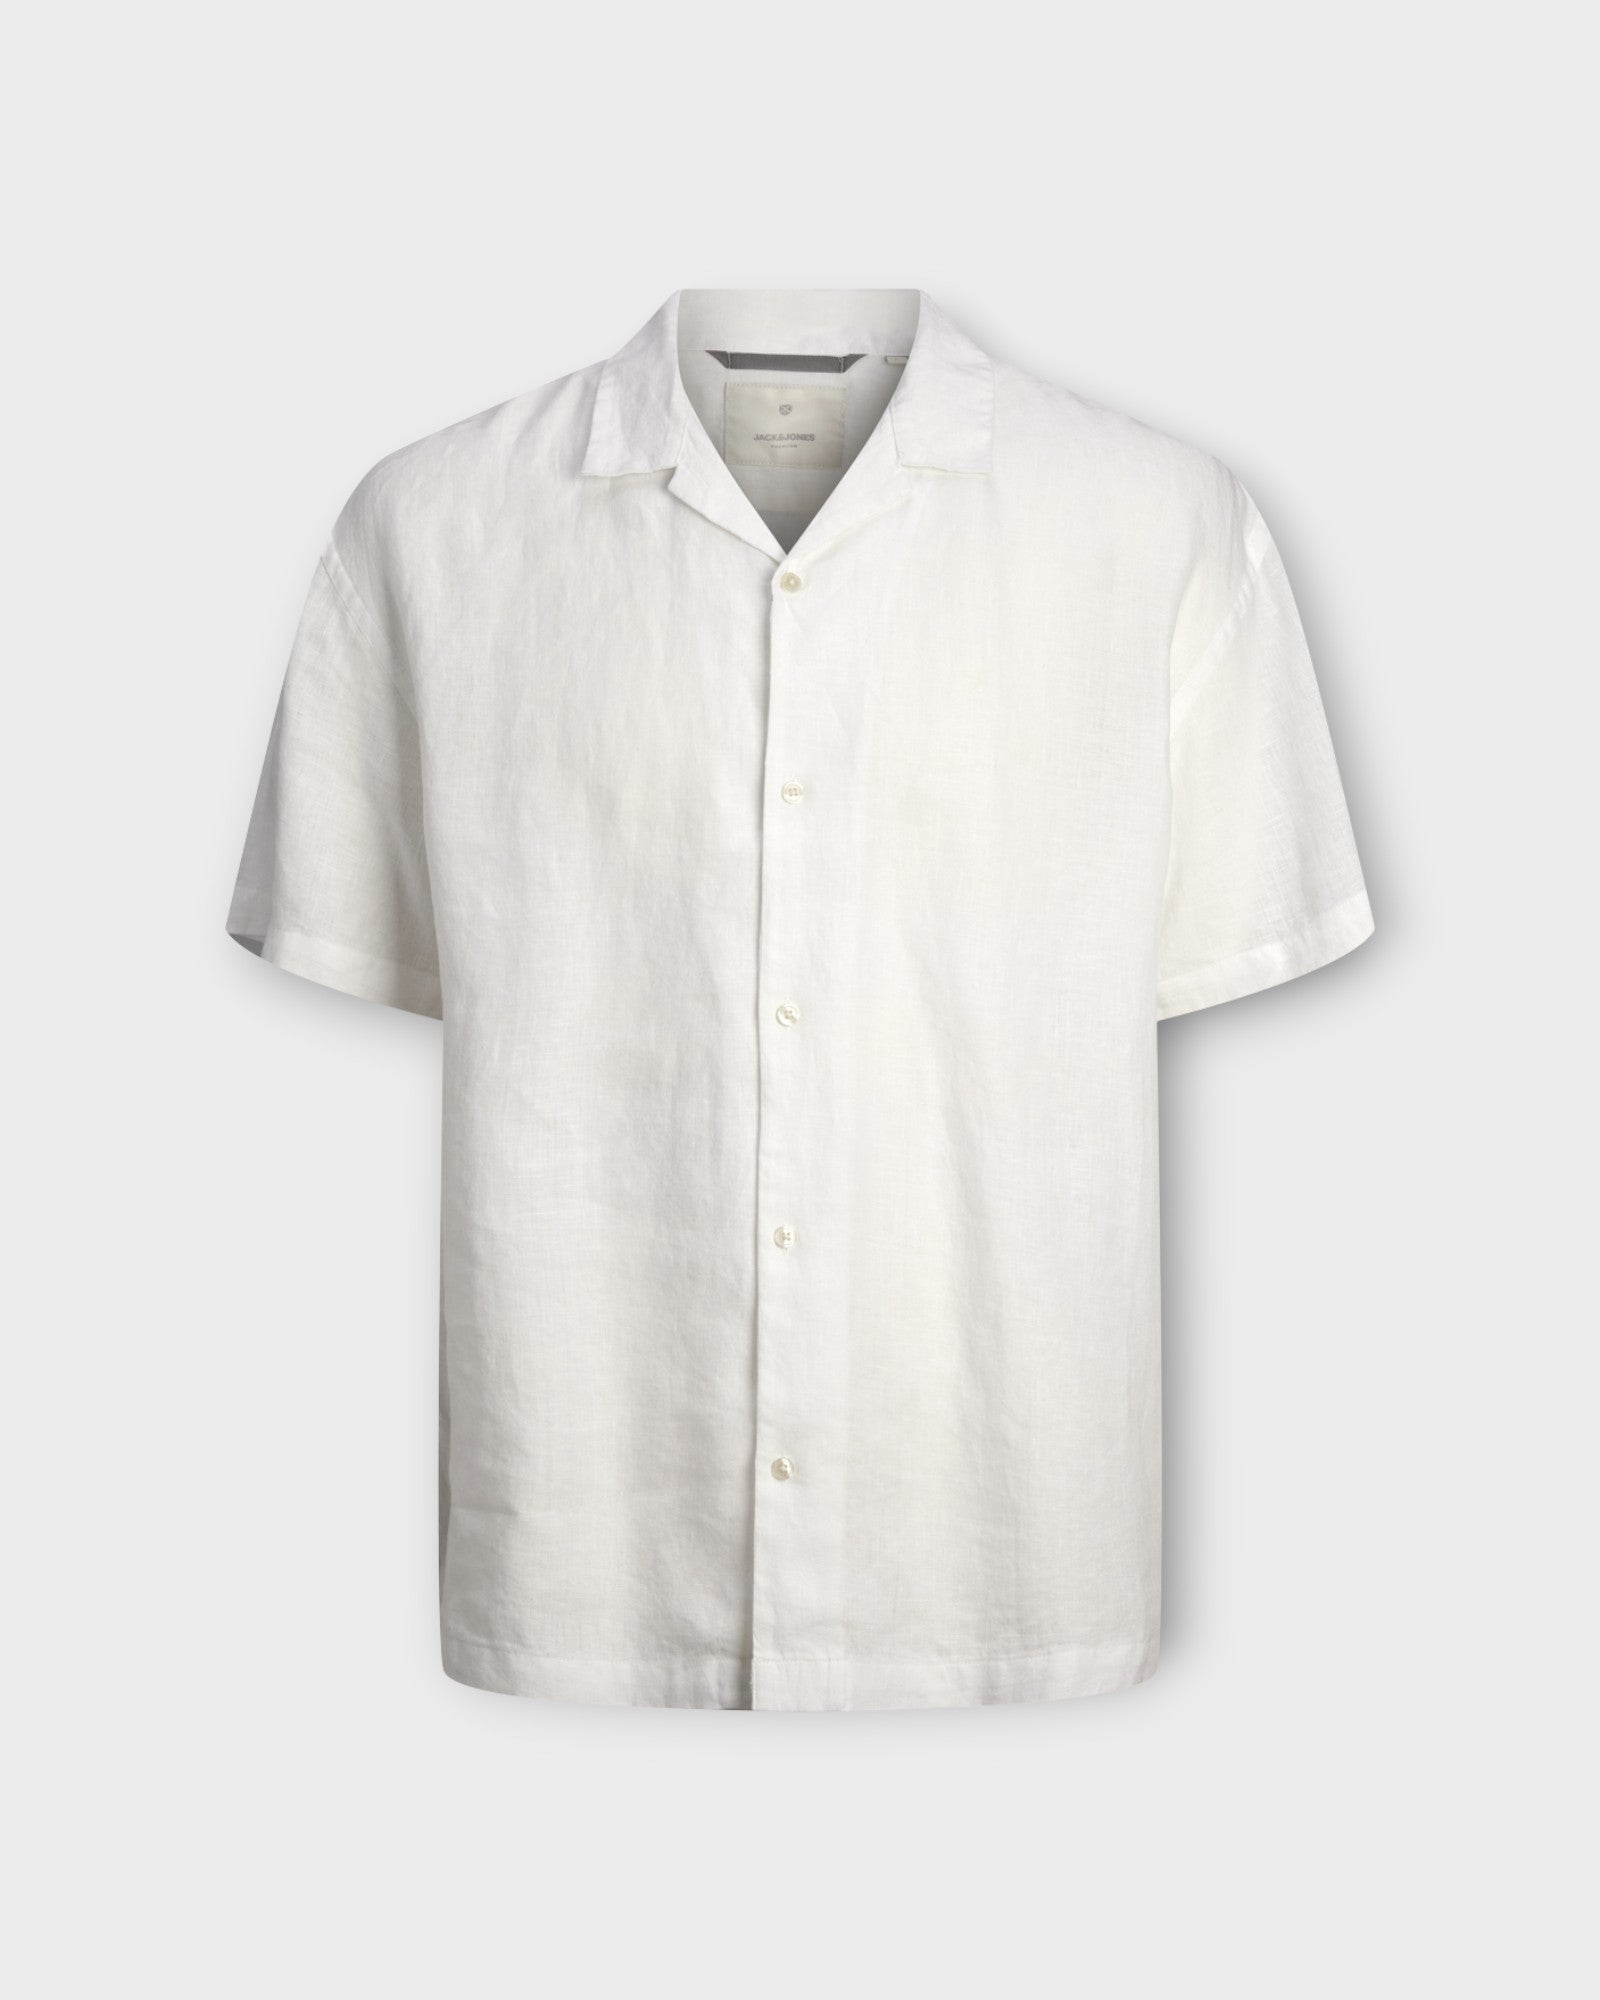 Lawrence Linen Resort Shirt SS LN Bright White fra Jack and Jones. Kortærmet hvid hørskjorte ti mænd. Her set forfra.